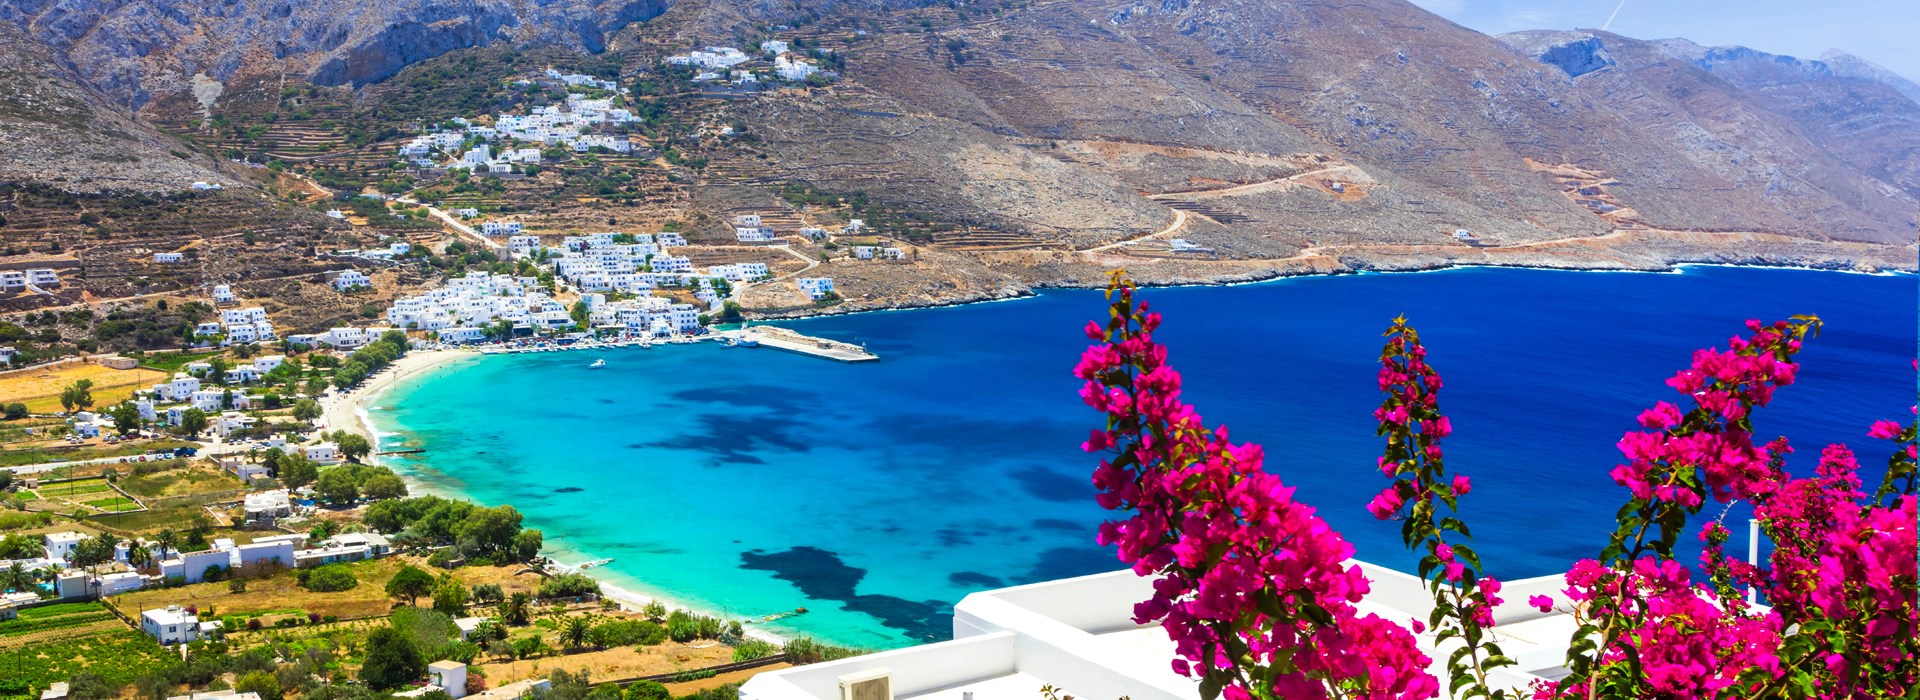 Visiter L'île d'Amorgos - Grèce